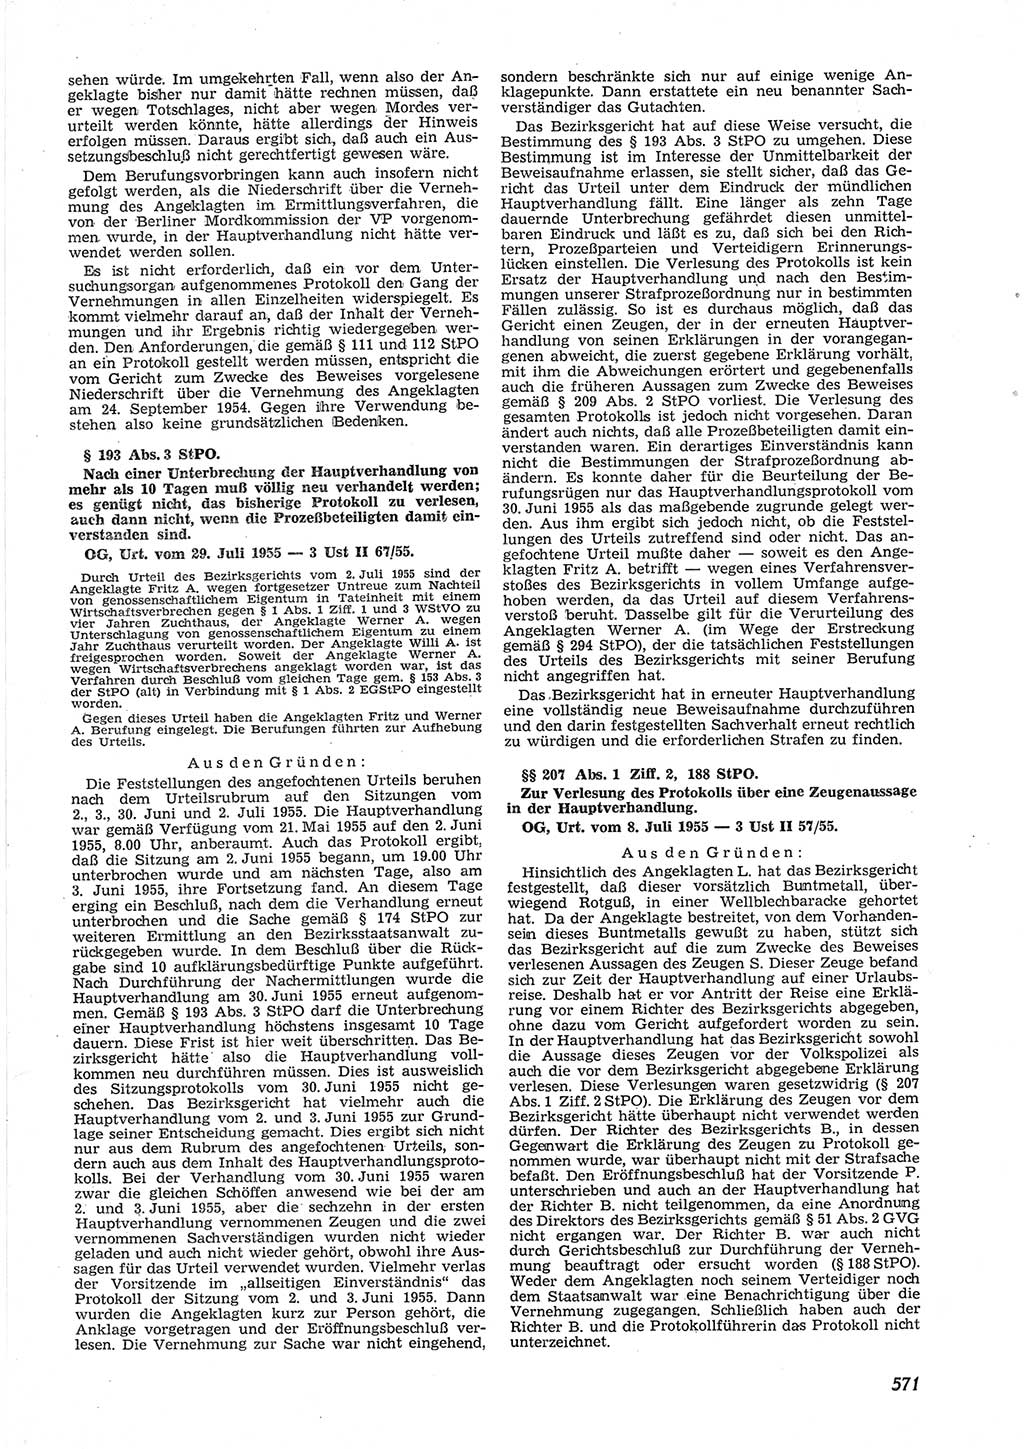 Neue Justiz (NJ), Zeitschrift für Recht und Rechtswissenschaft [Deutsche Demokratische Republik (DDR)], 9. Jahrgang 1955, Seite 571 (NJ DDR 1955, S. 571)